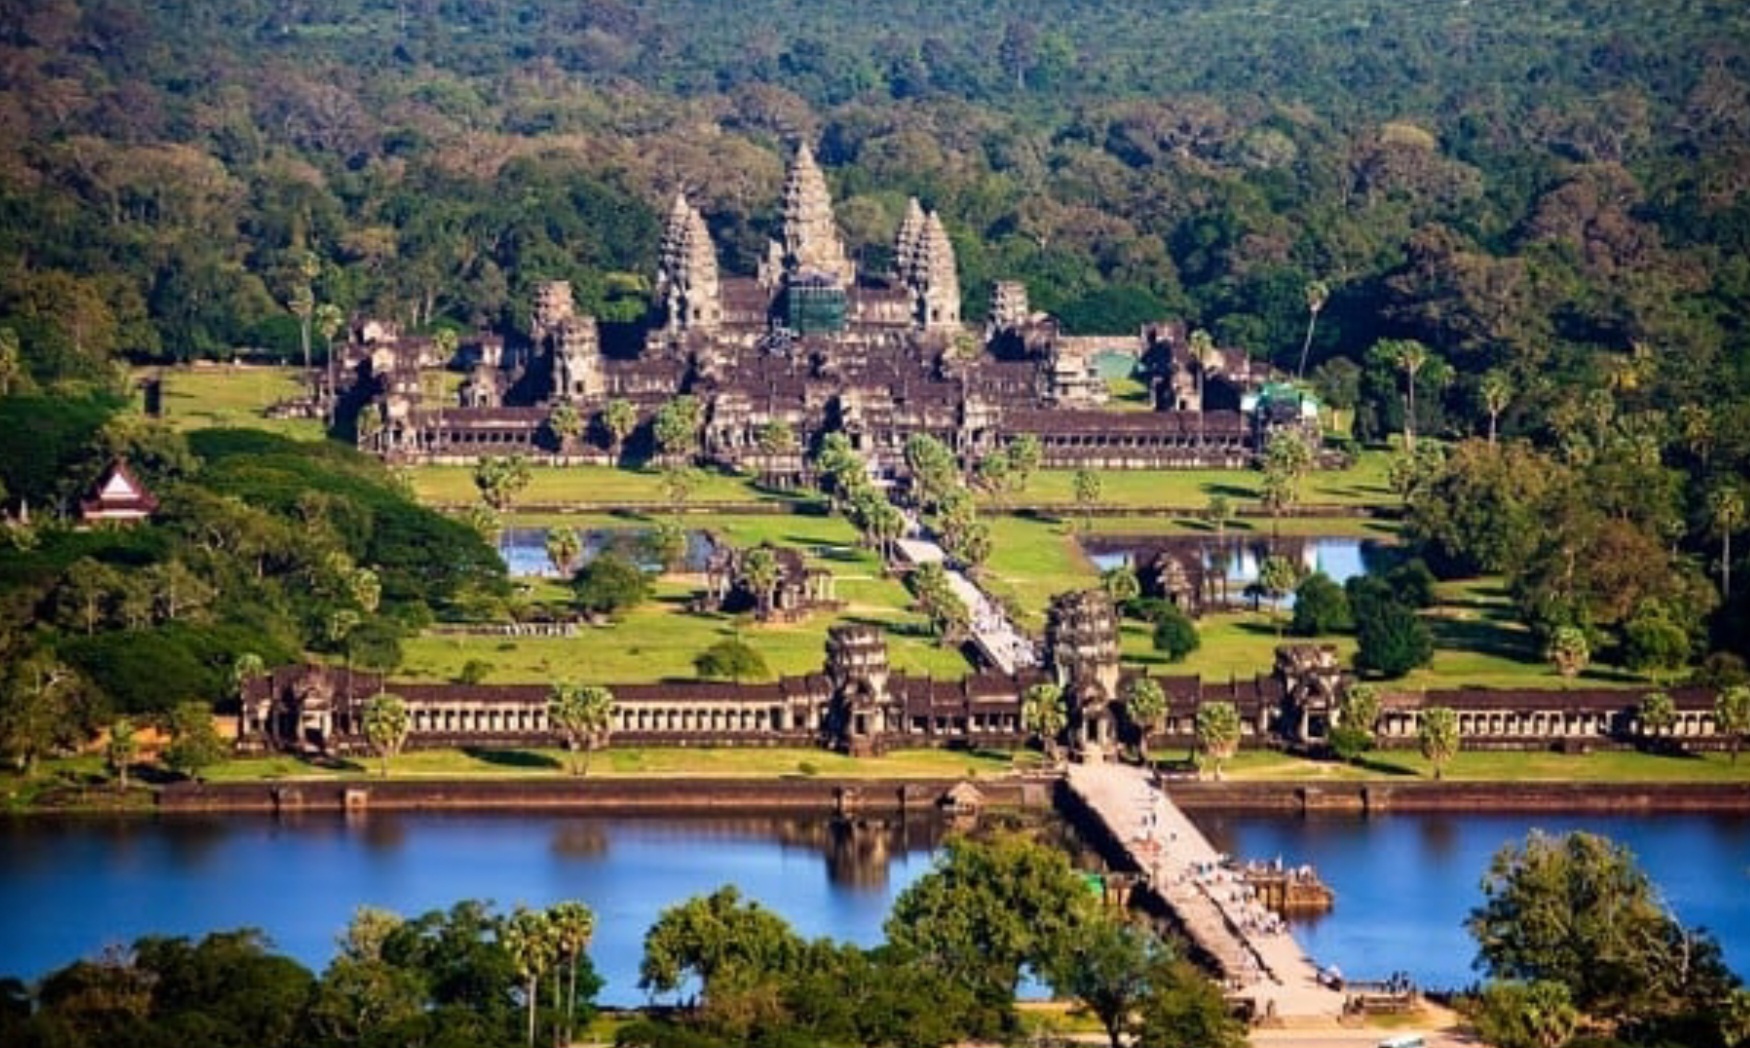 'Bản sao' Angkor Wat đang xây dựng ở Thái Lan bị Campuchia chỉ trích - Ảnh 4.